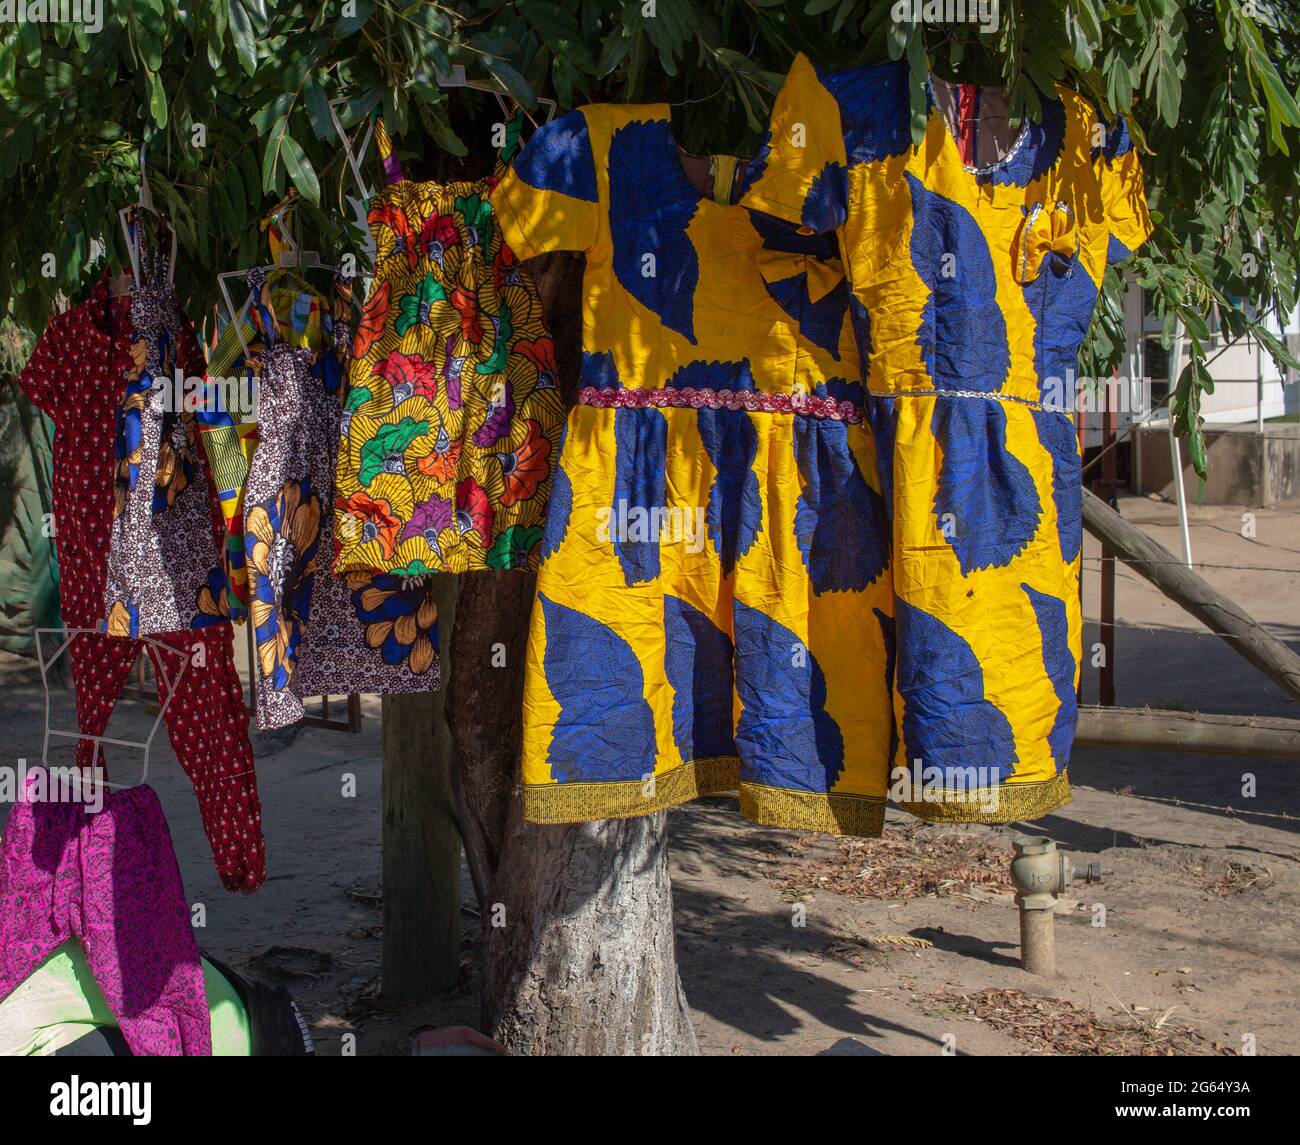 Vestidos y trajes hechos de telas tradicionales exhibidos en un árbol en la calle para la venta Fotografía de stock -